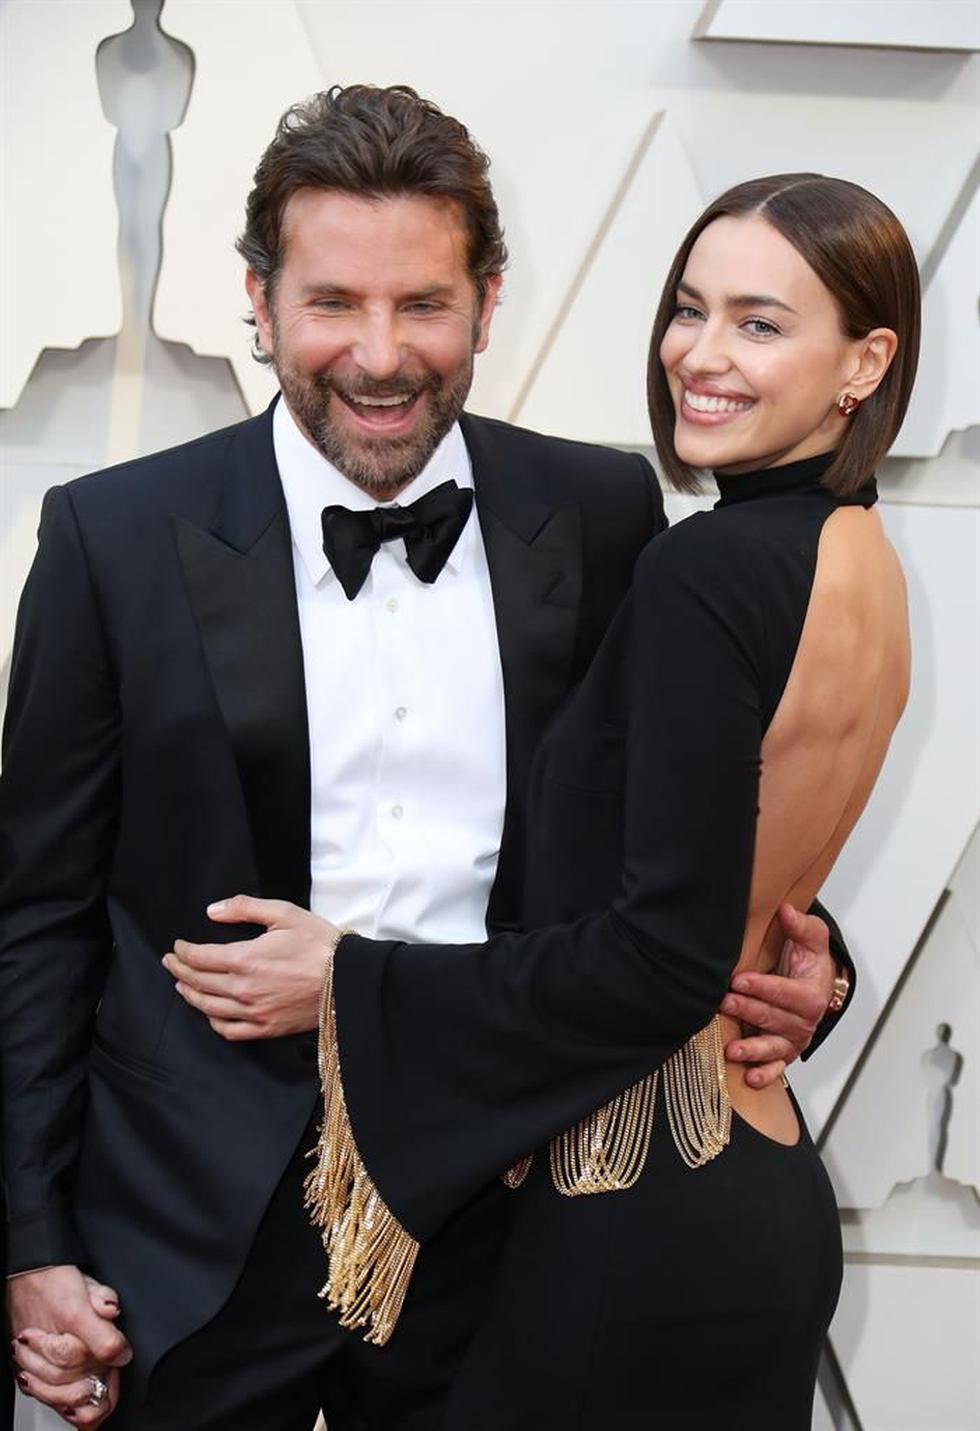 ¡Se acabó el amor! Bradley Cooper e Irina Shayk terminan su relación